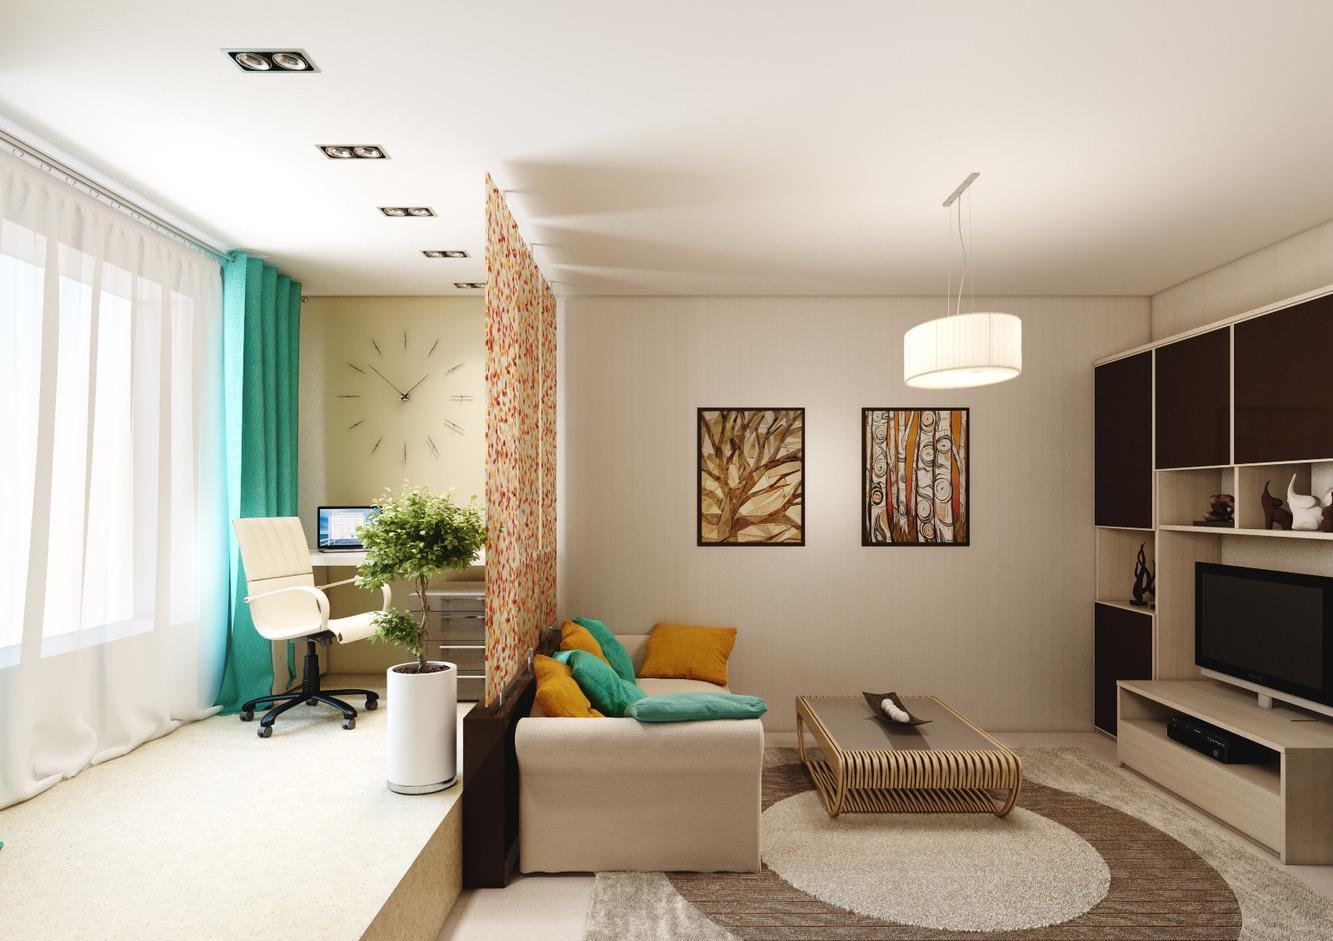 Дизайн спальни-гостиной 16 кв. м (49 фото): интерьер и планировка совмещенной комнаты